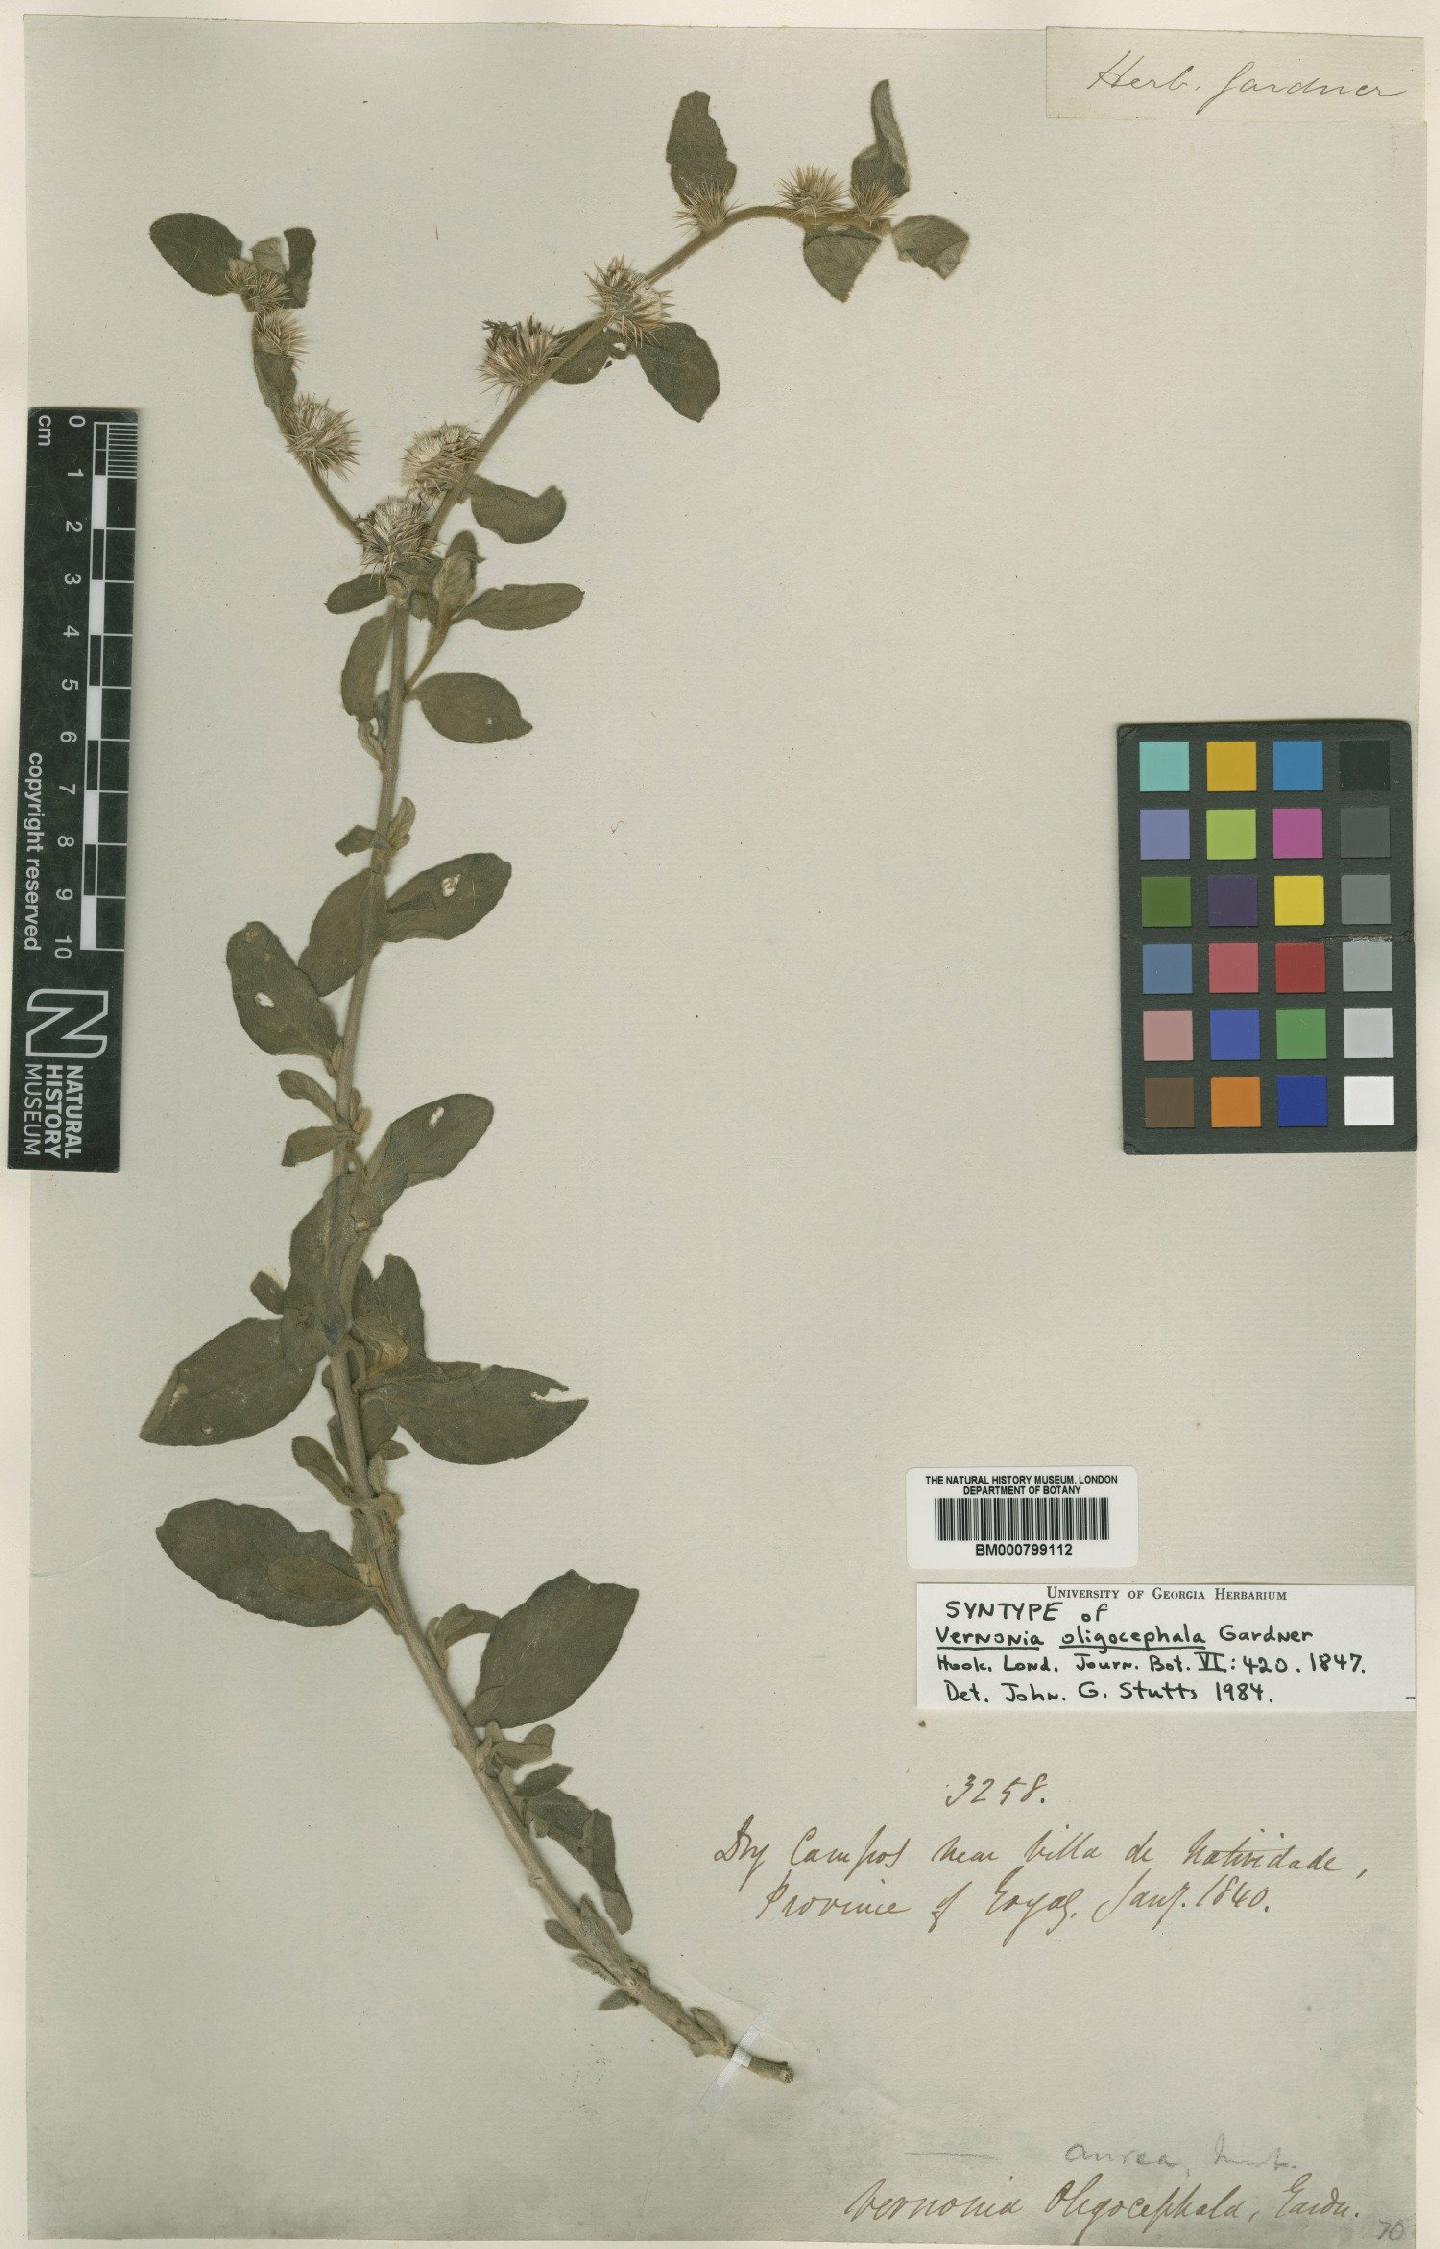 To NHMUK collection (Vernonia aurea Mart. ex DC.; Syntype; NHMUK:ecatalogue:4991439)